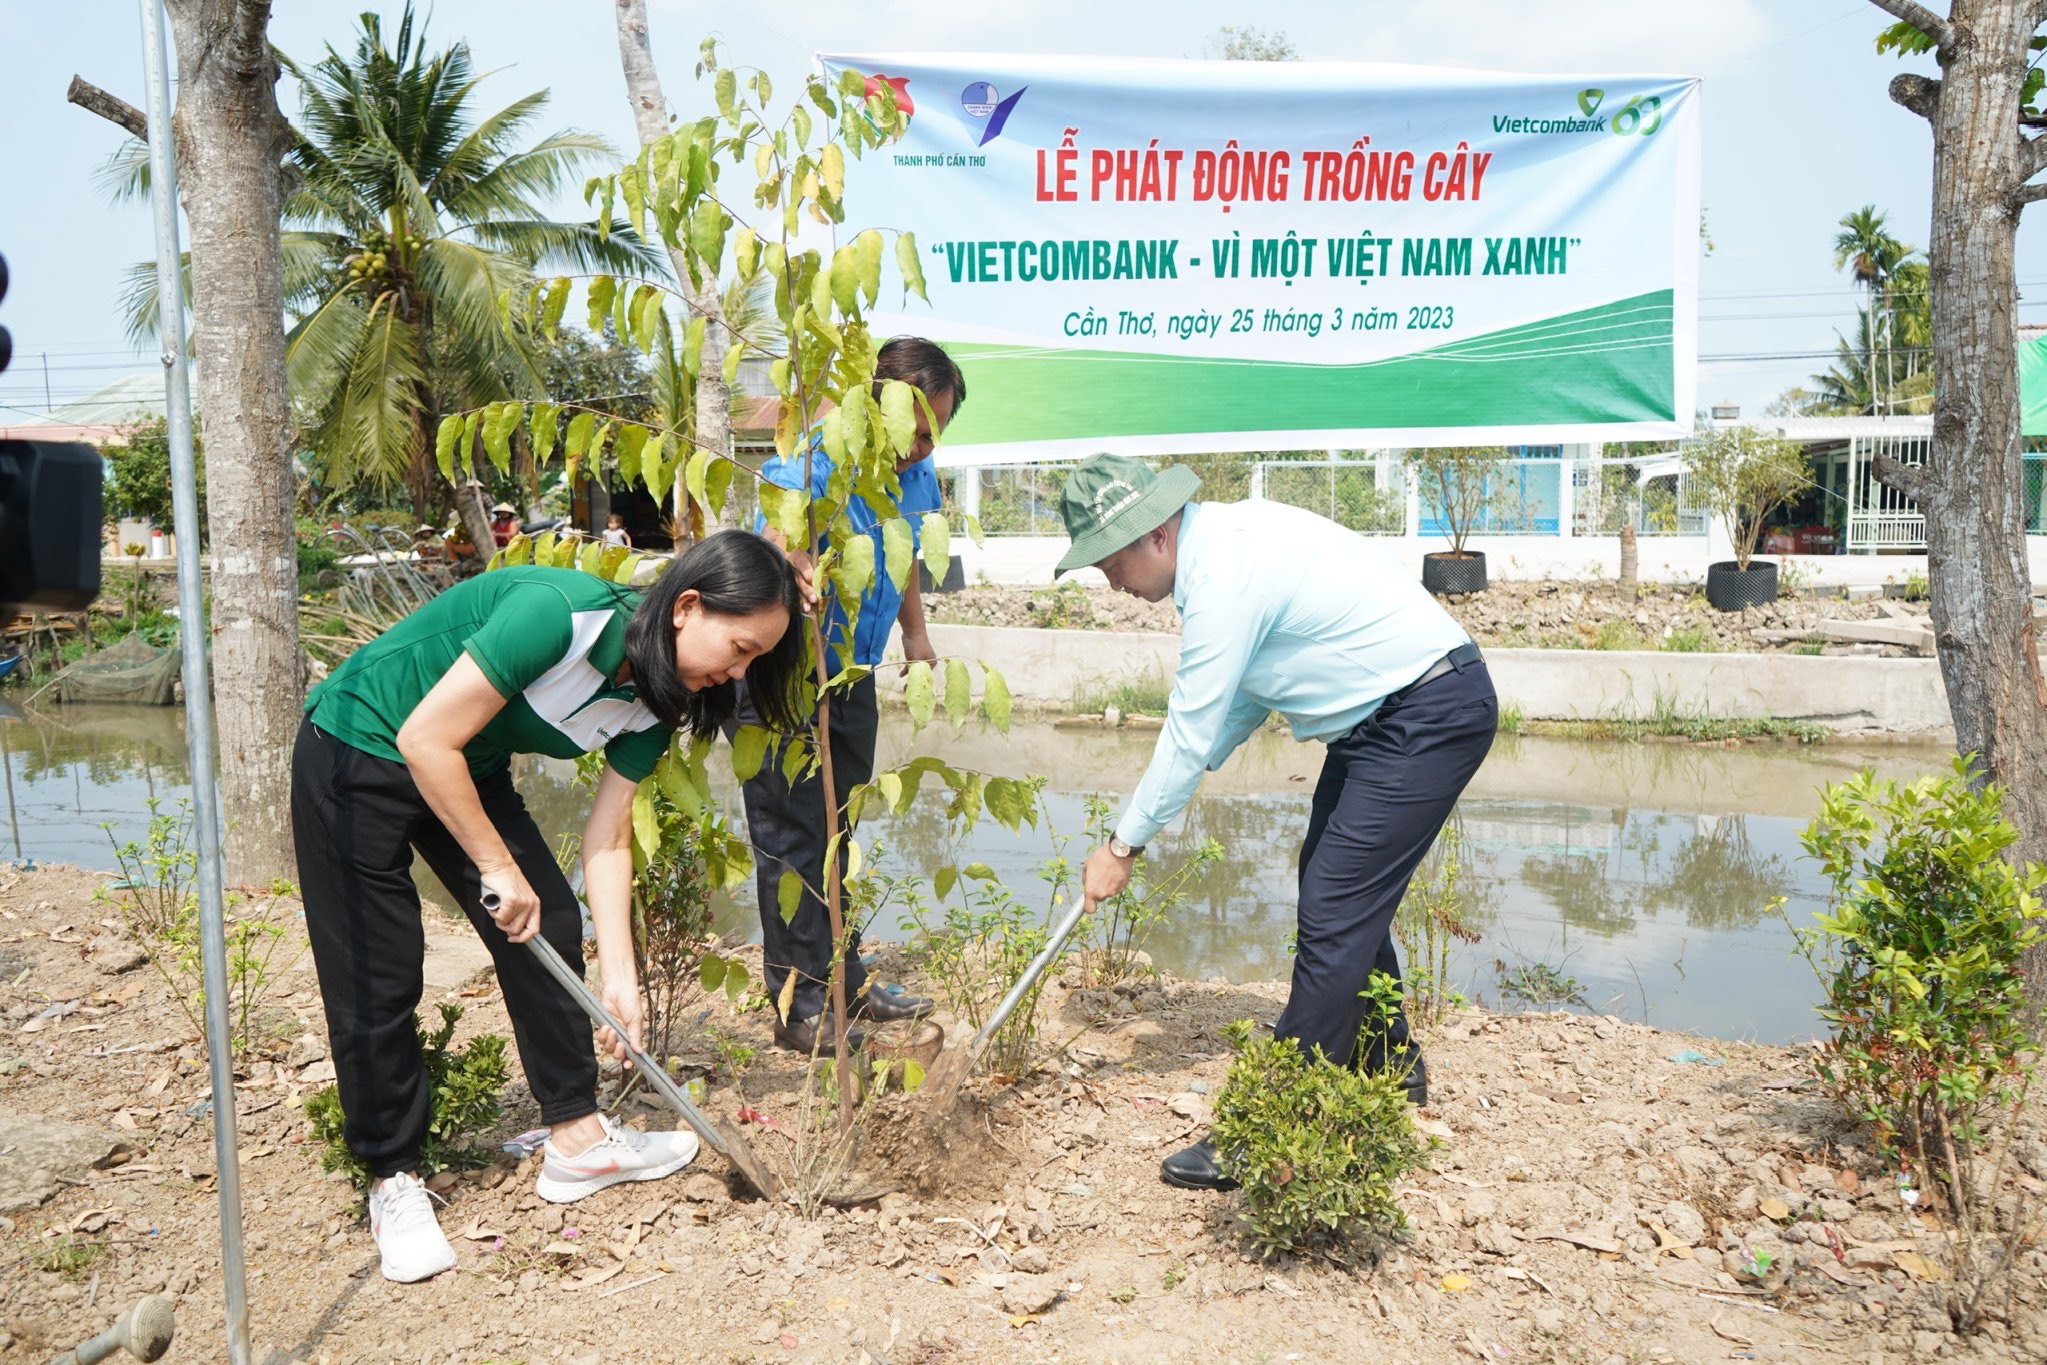 Vietcombank Cần Thơ hưởng ứng chương trình trồng cây “Vietcombank - Vì một Việt Nam xanh”